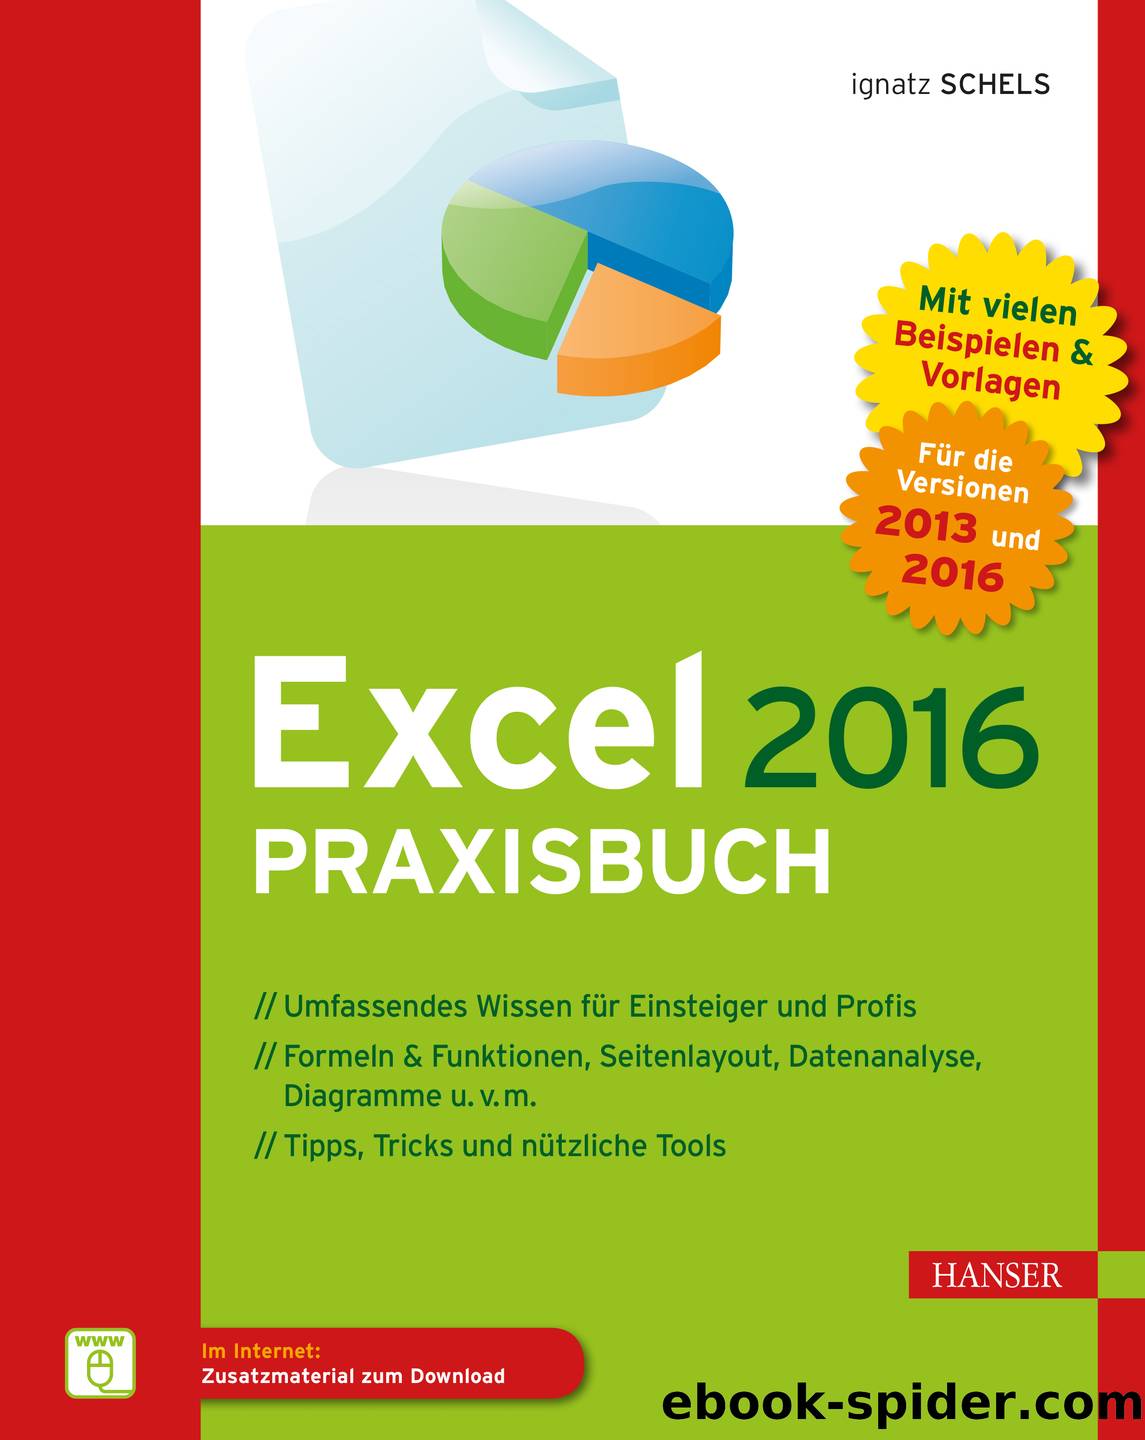 Excel 2016 Praxisbuch by Ignatz Schels